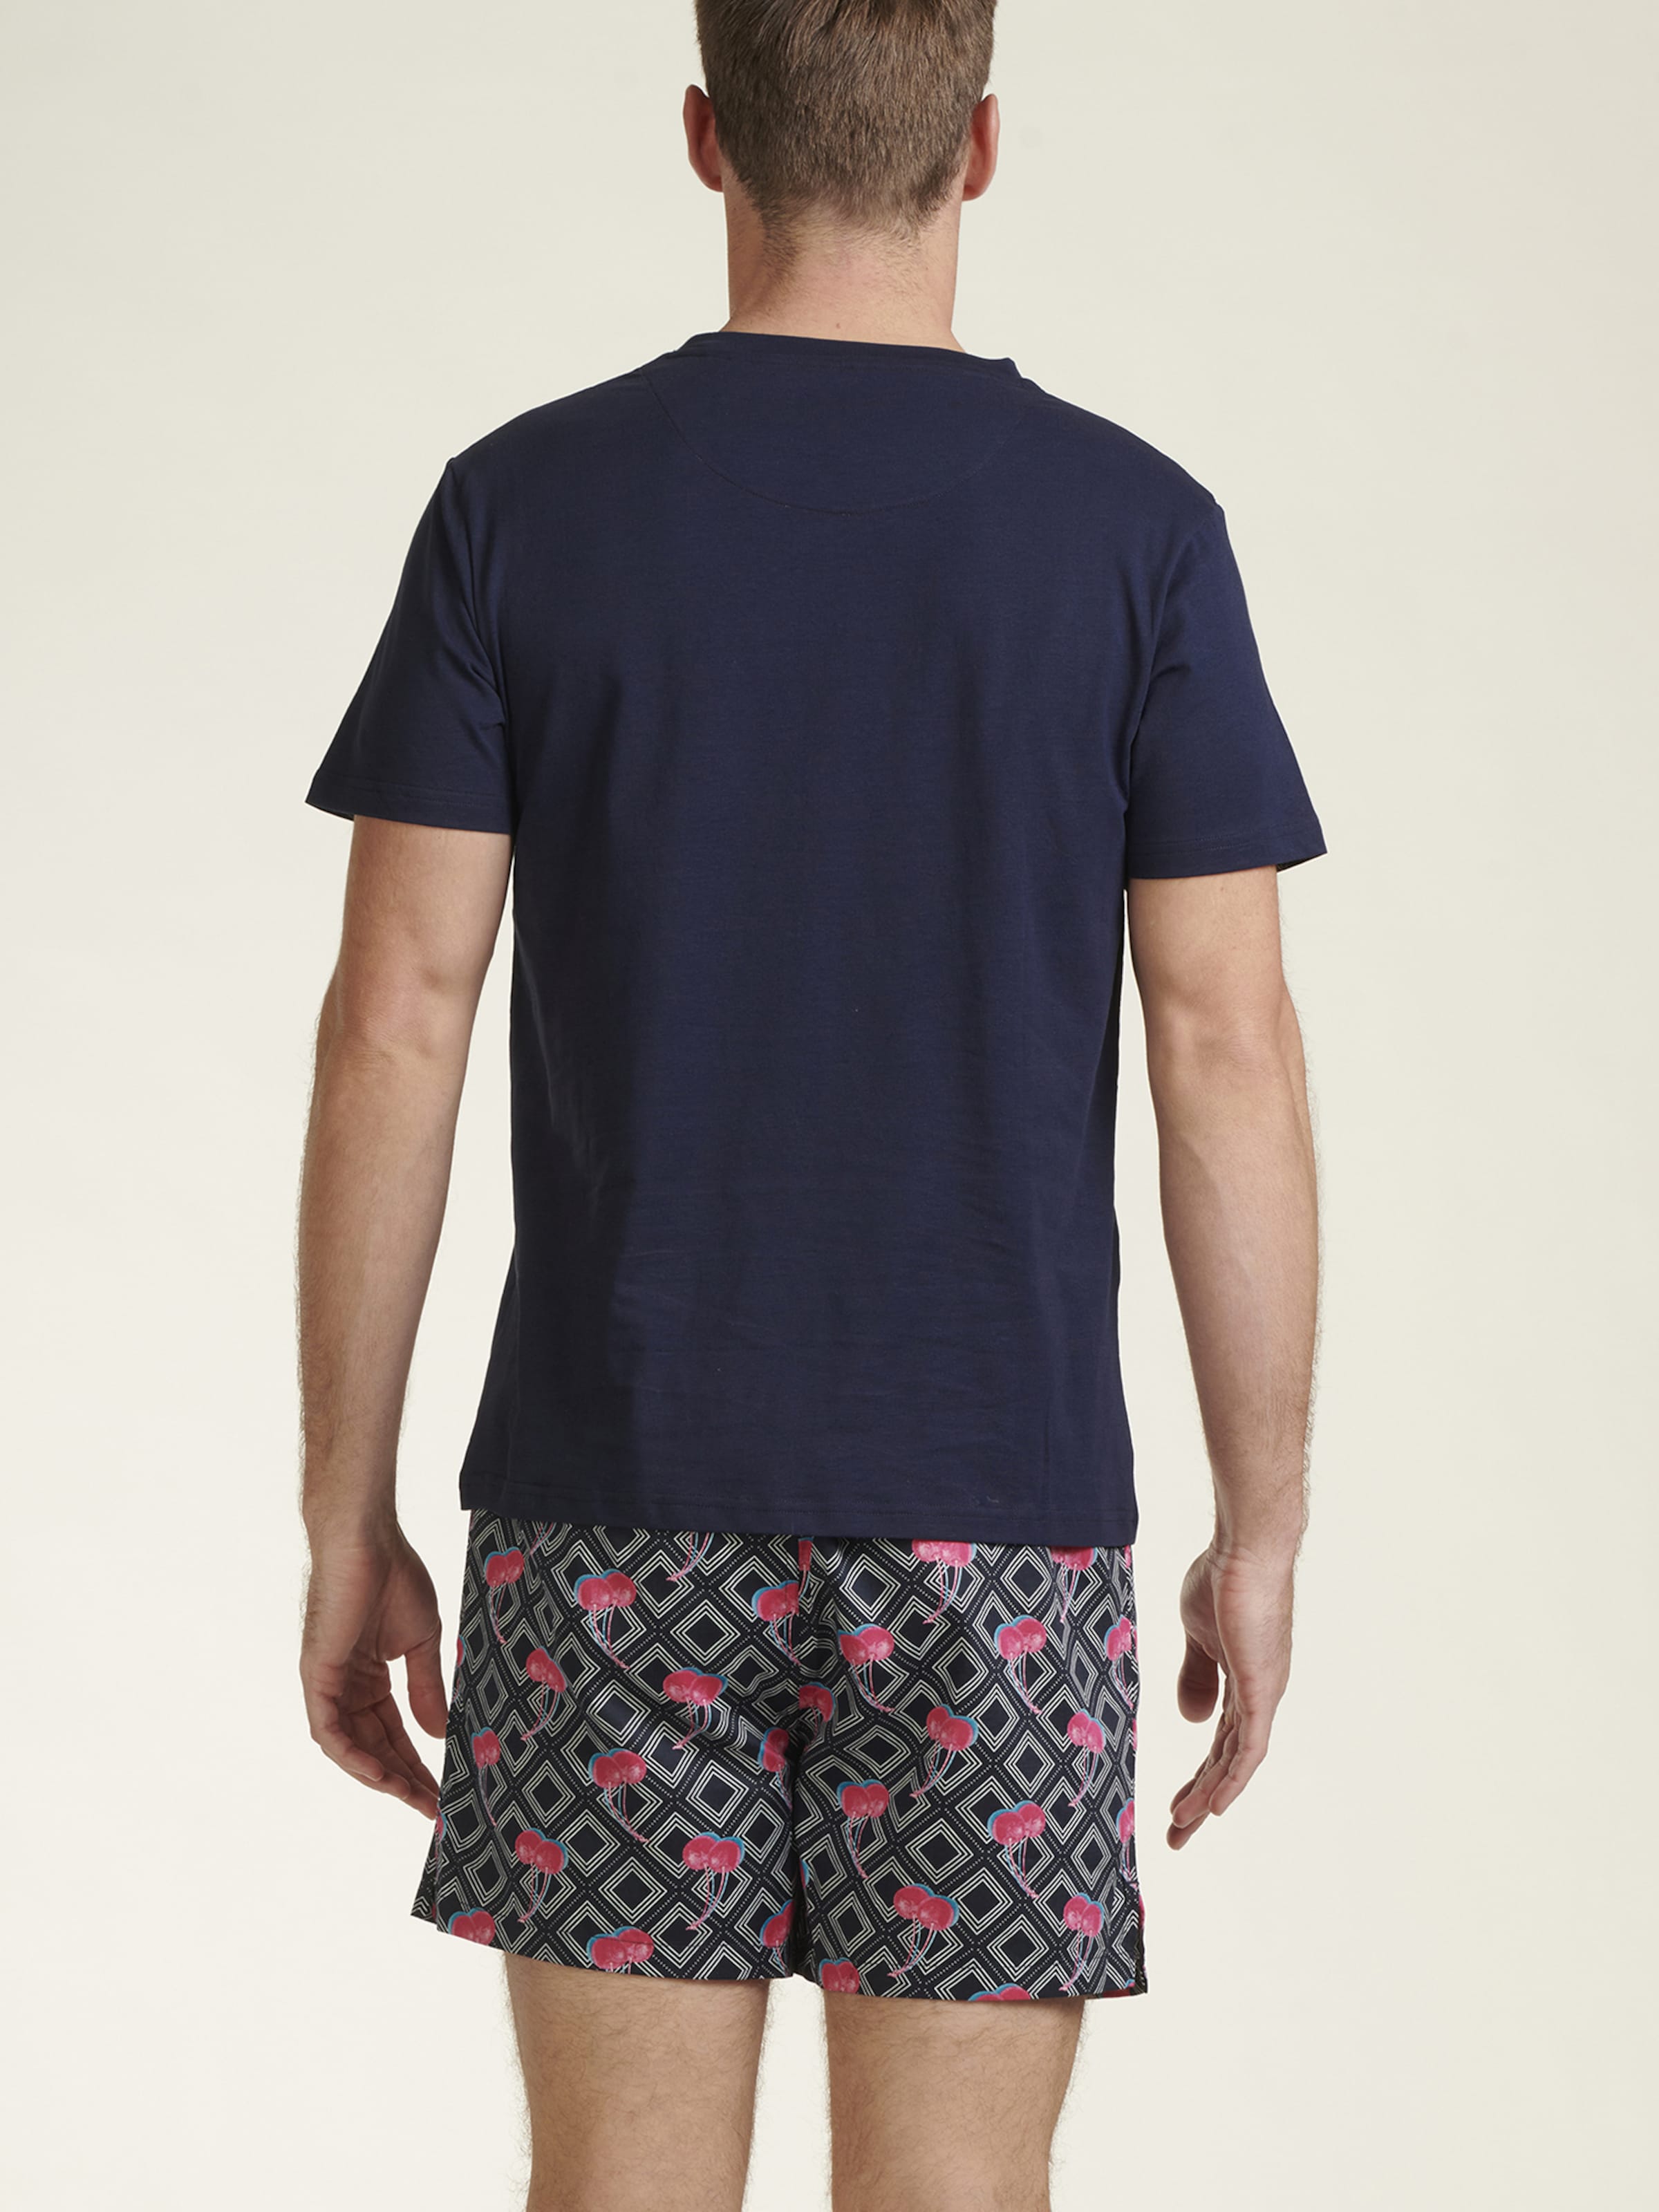 Männer Wäsche Ted Baker Pyjama in Hellblau, Dunkelblau - HI55869